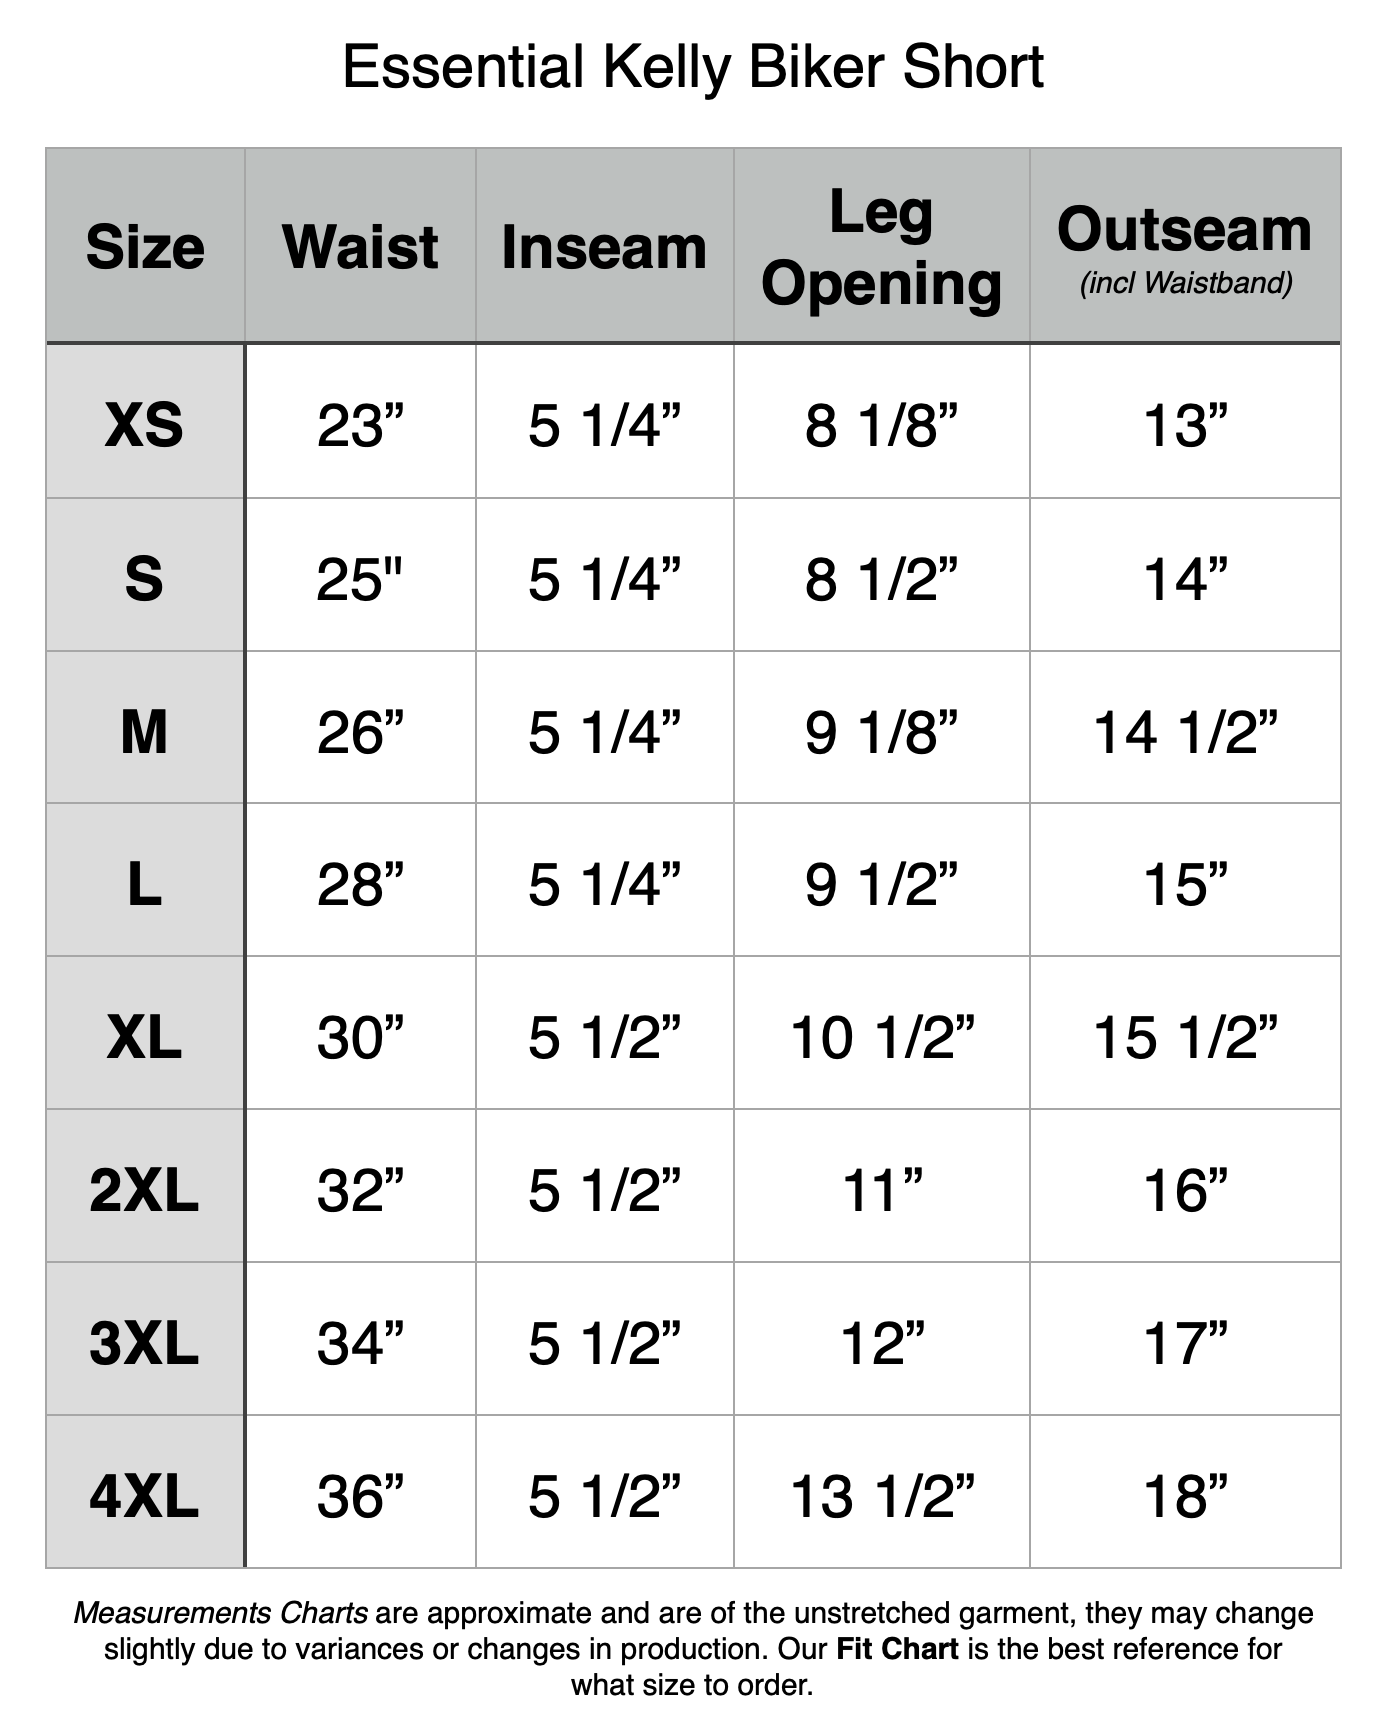 Essential Kelly Biker Shorts - XS: 23" Waist, 5.25" Inseam, 13" Out Seam. S: 25" Waist, 5.25" Inseam, 14" Out Seam. M: 26" Waist, 5.25" Inseam, 14.5" Out Seam. L: 28" Waist, 5.25" Inseam, 15" Out Seam. XL: 30" Waist, 5.5" Inseam, 15.5" Out Seam. 2XL: 32" Waist, 5.5" Inseam, 16" Out Seam. 3XL: 34" Waist, 5.5" Inseam, 17" Out Seam. 4XL: 36" Waist, 5.5" Inseam, 18" Out Seam.